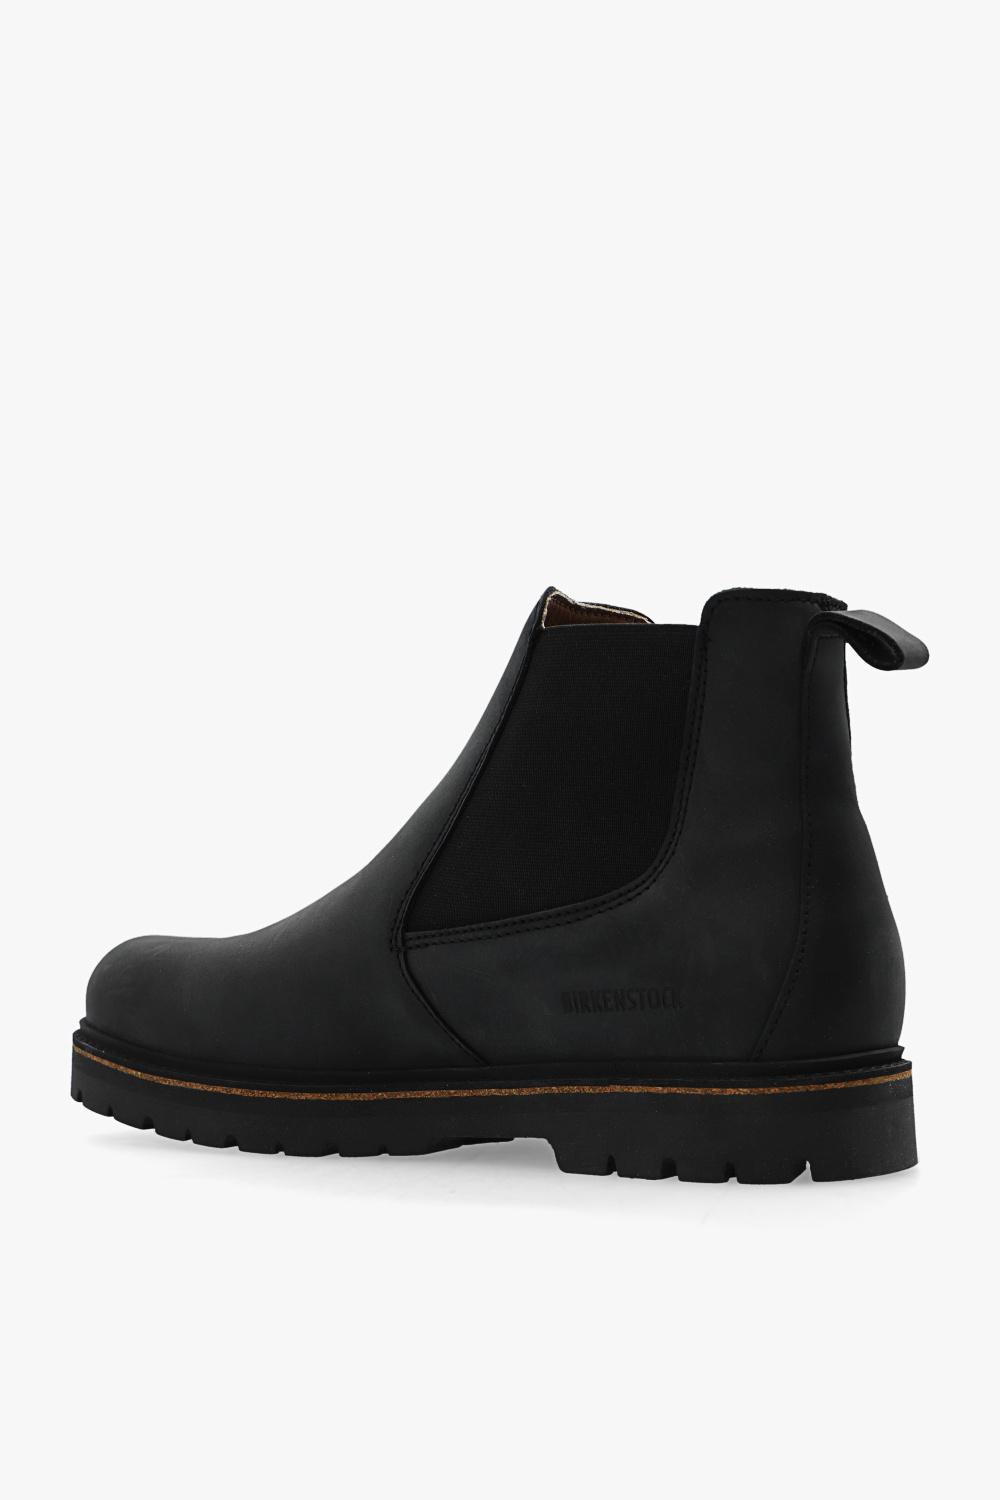 Birkenstock Leather 'stalon Ii' Chelsea Boots in Black for Men | Lyst